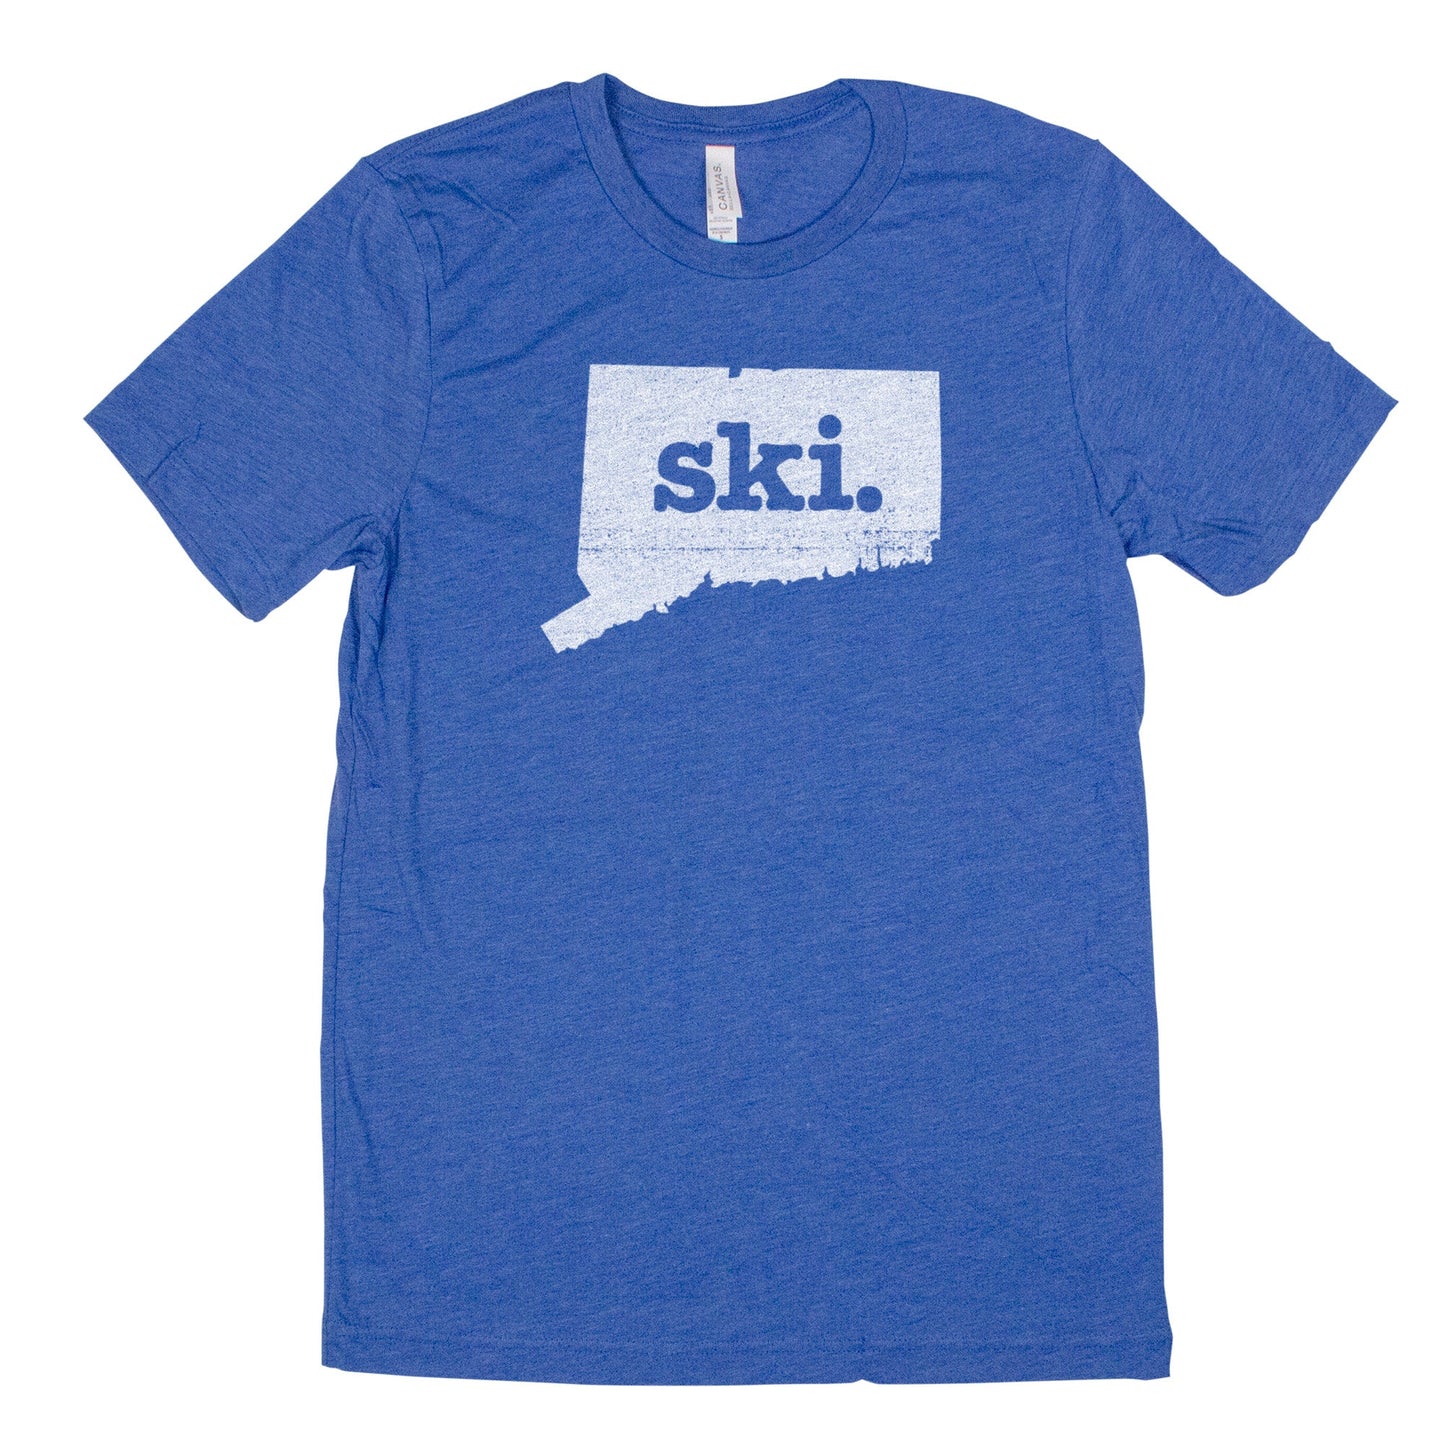 ski. Men's Unisex T-Shirt - Connecticut